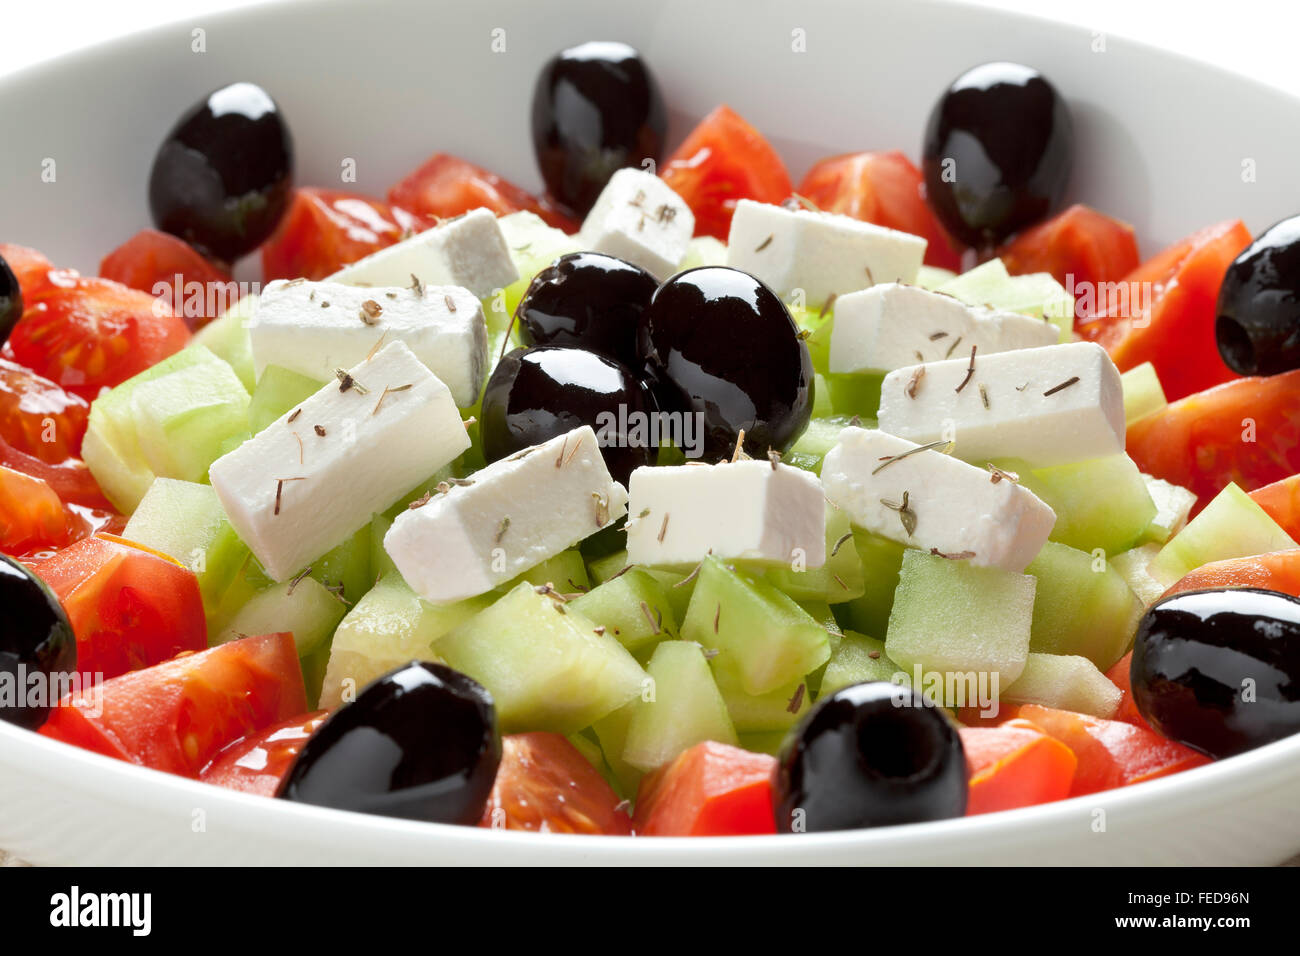 Insalata greca con il formaggio feta e olive nere, cetrioli e pomodori Foto Stock